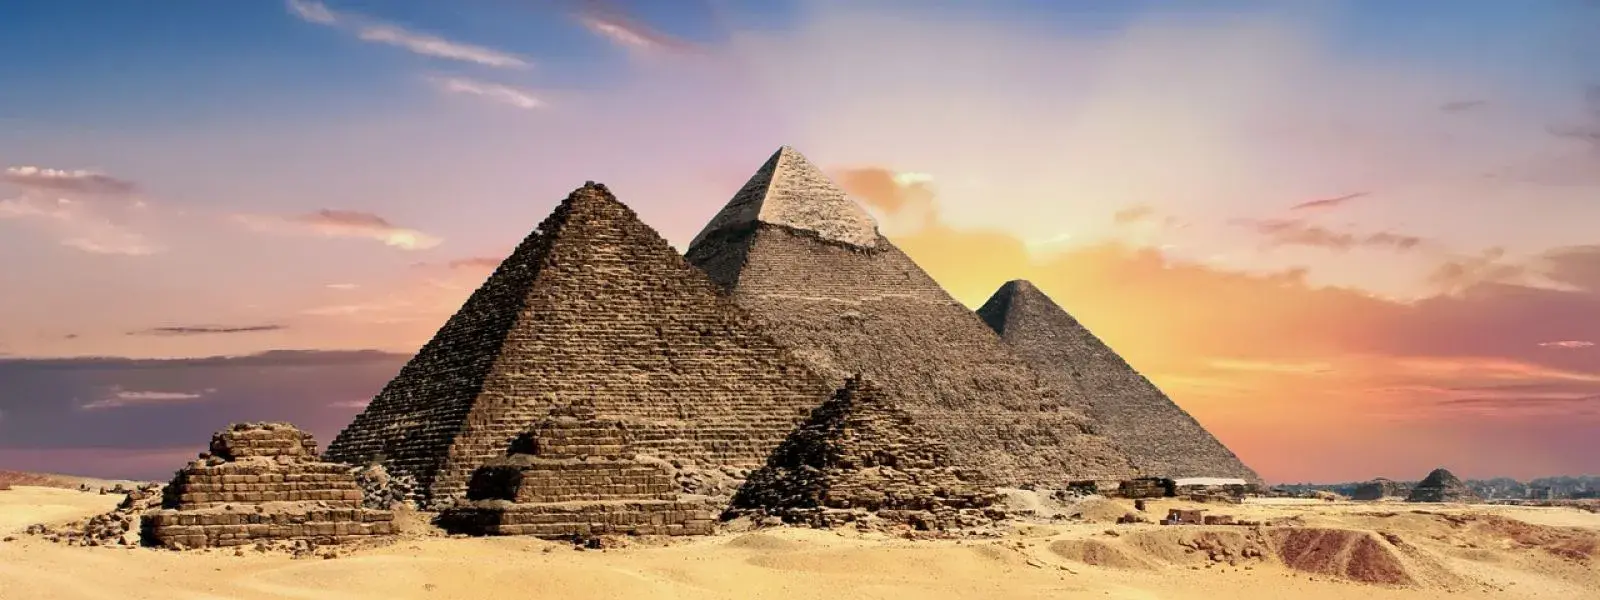 Les pyramides de gizeh vues ici avec la voie lactee en arriere plan ne sont pas les plus anciennes pyramides d egypte